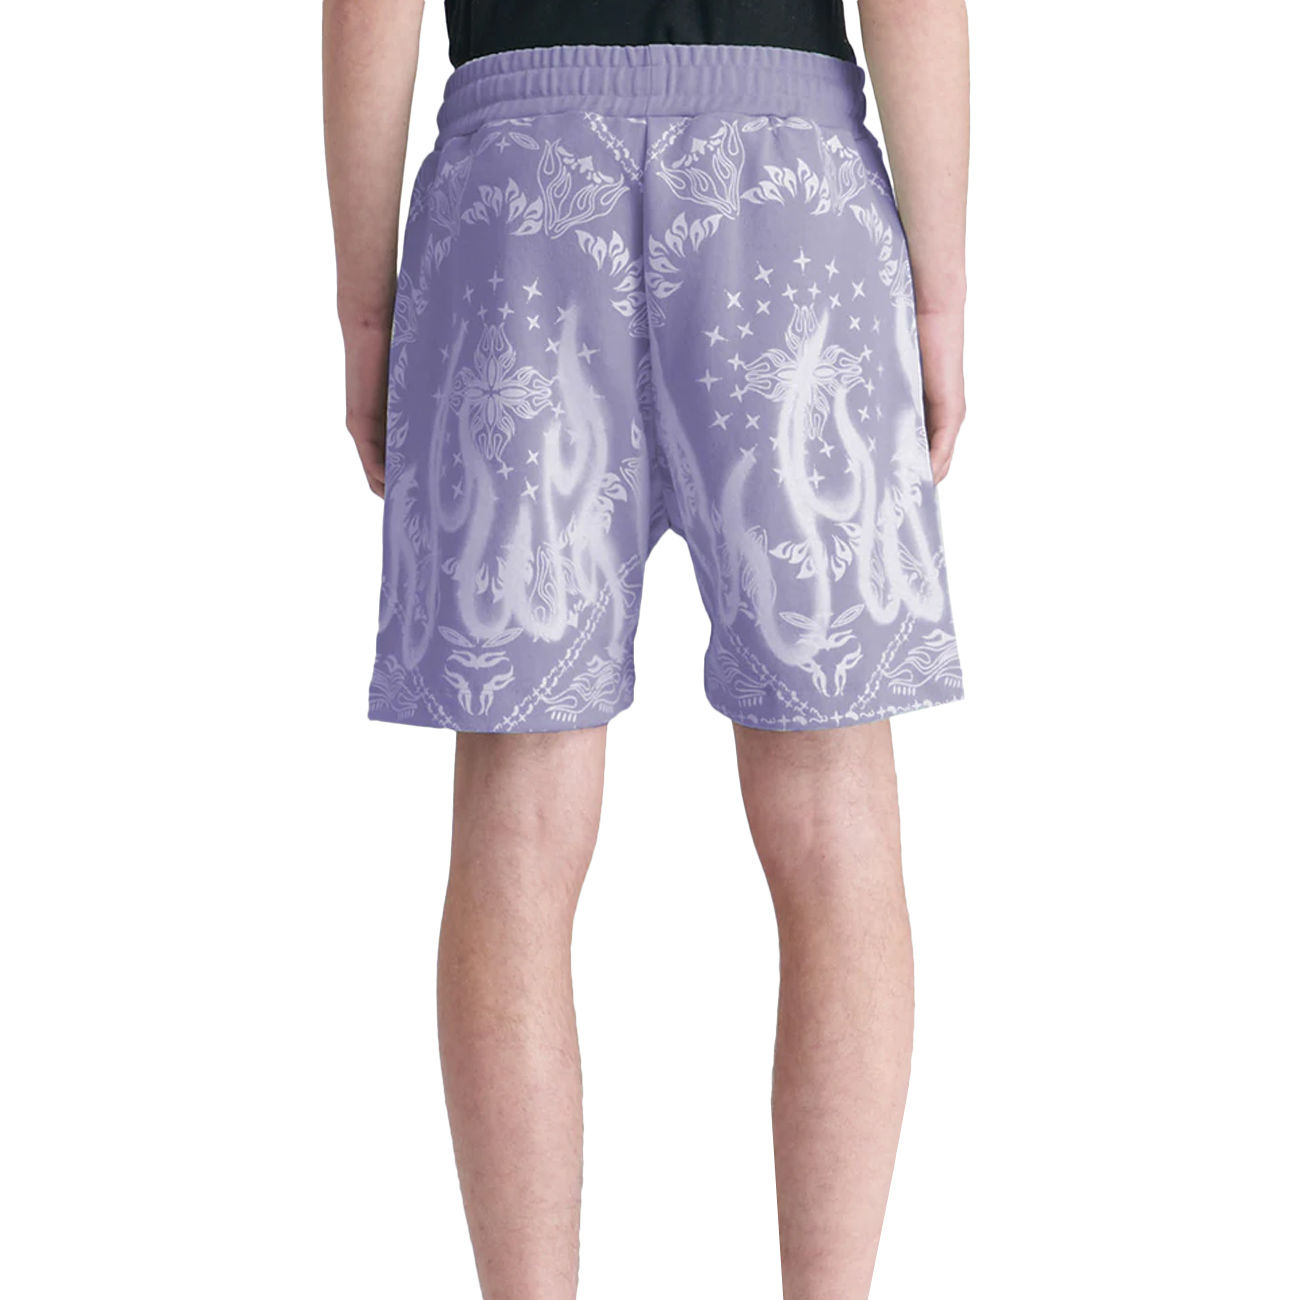 LV Louis Vuitton Monogram Bandana Swim Shorts, Men's Fashion